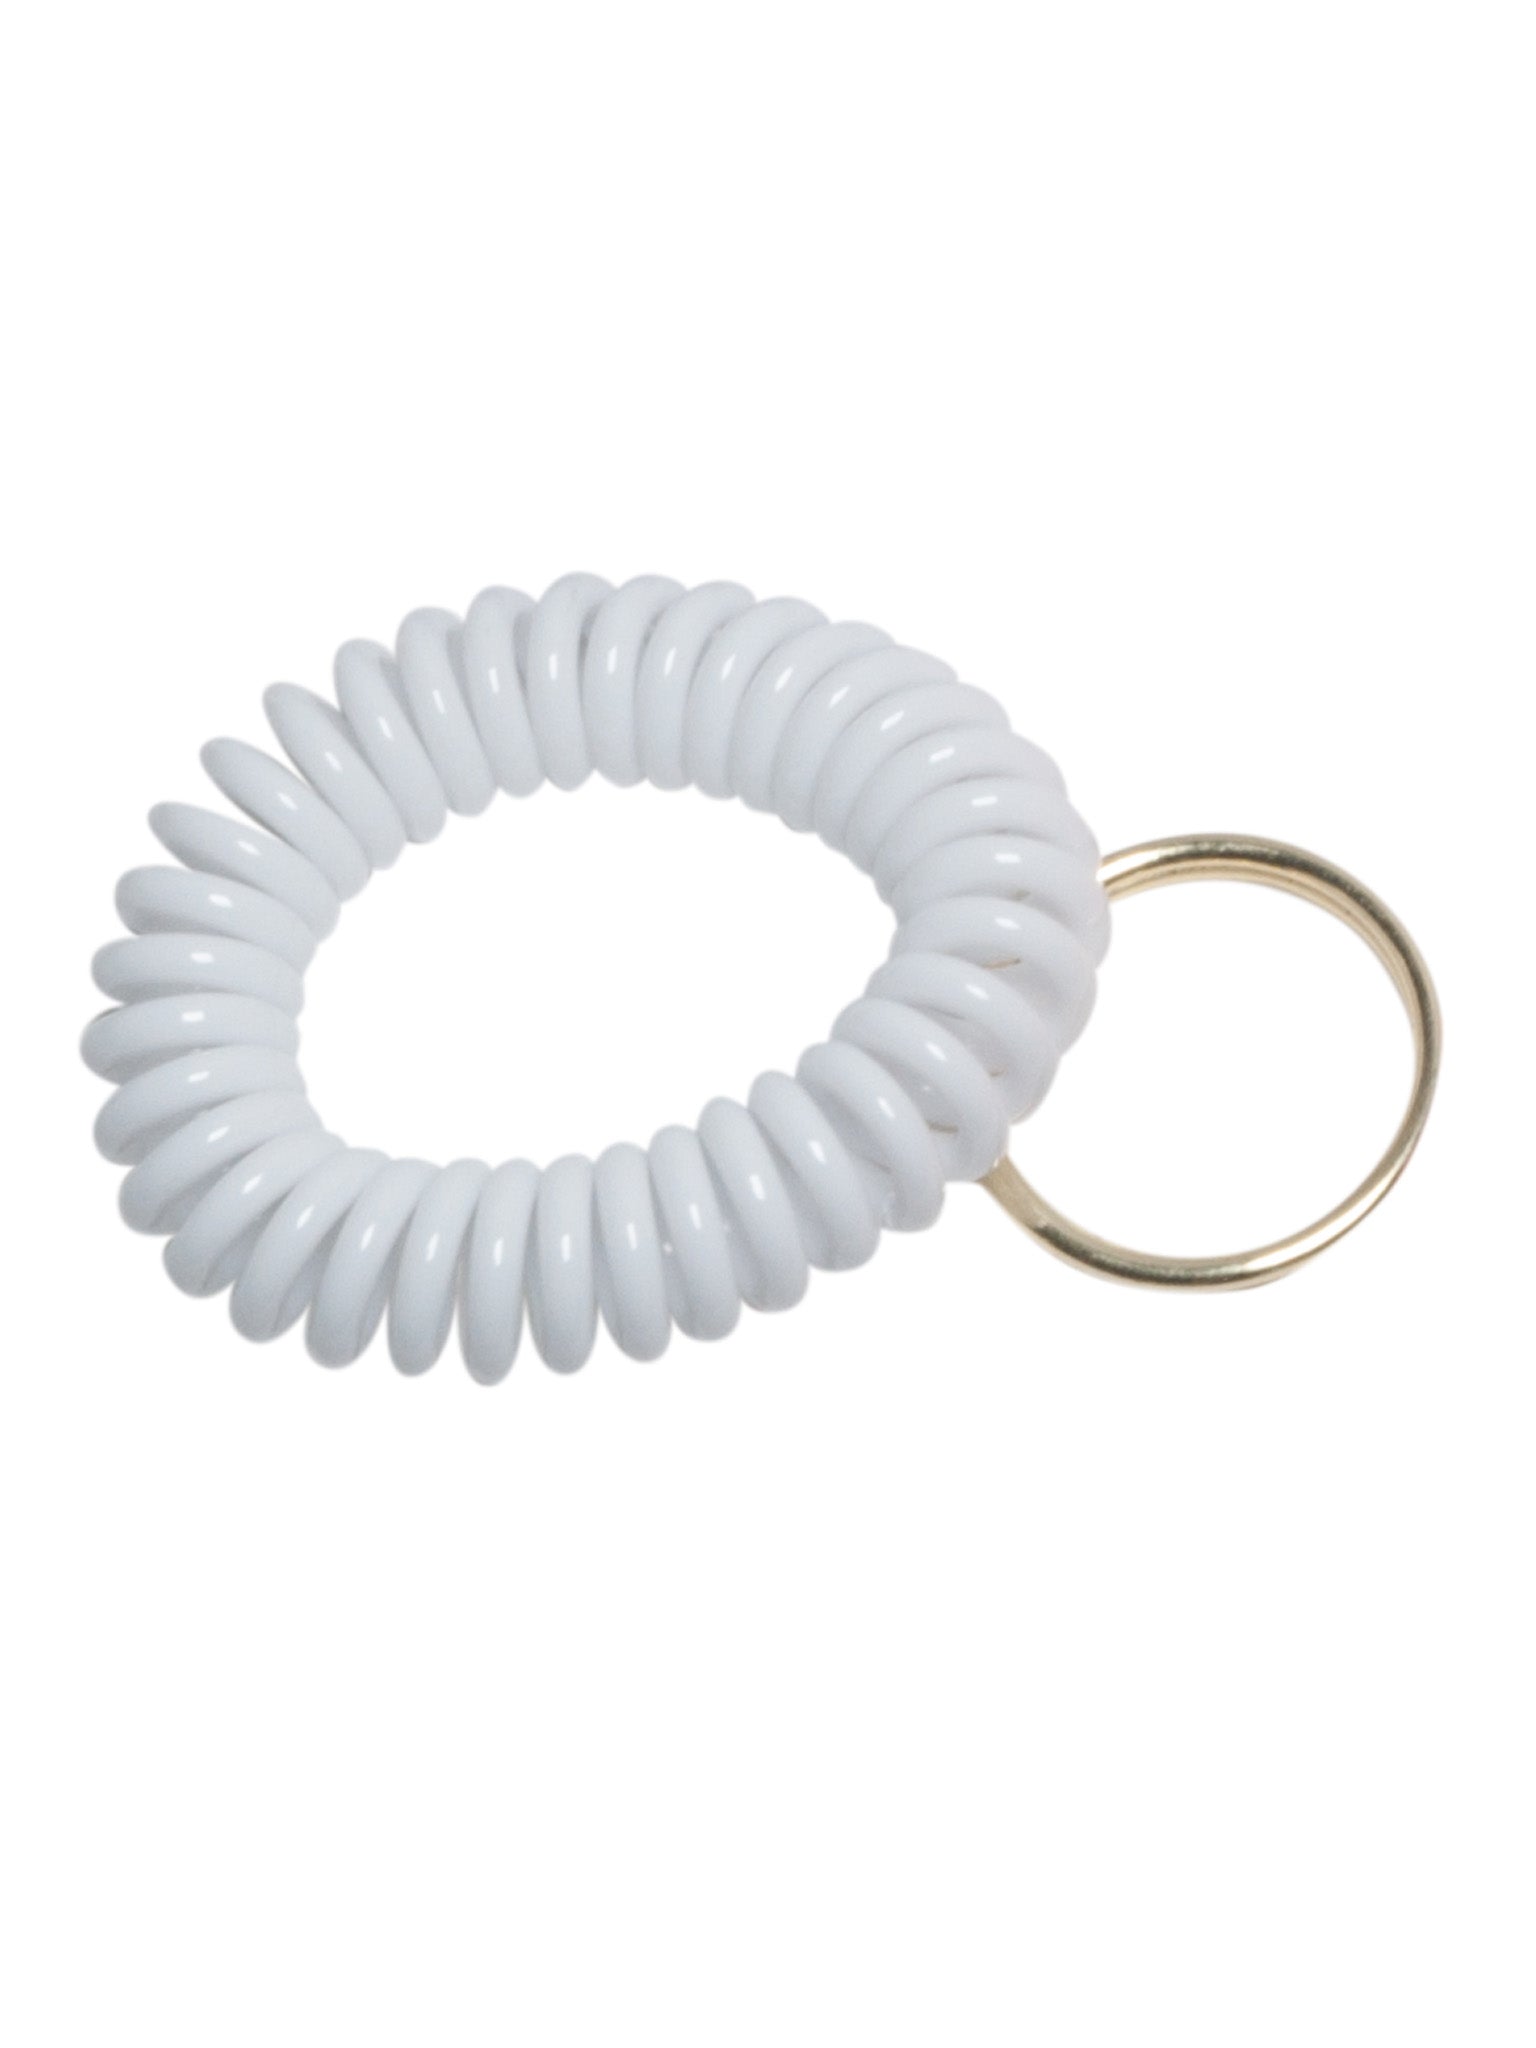 Spiral Bracelets For Whistle - White